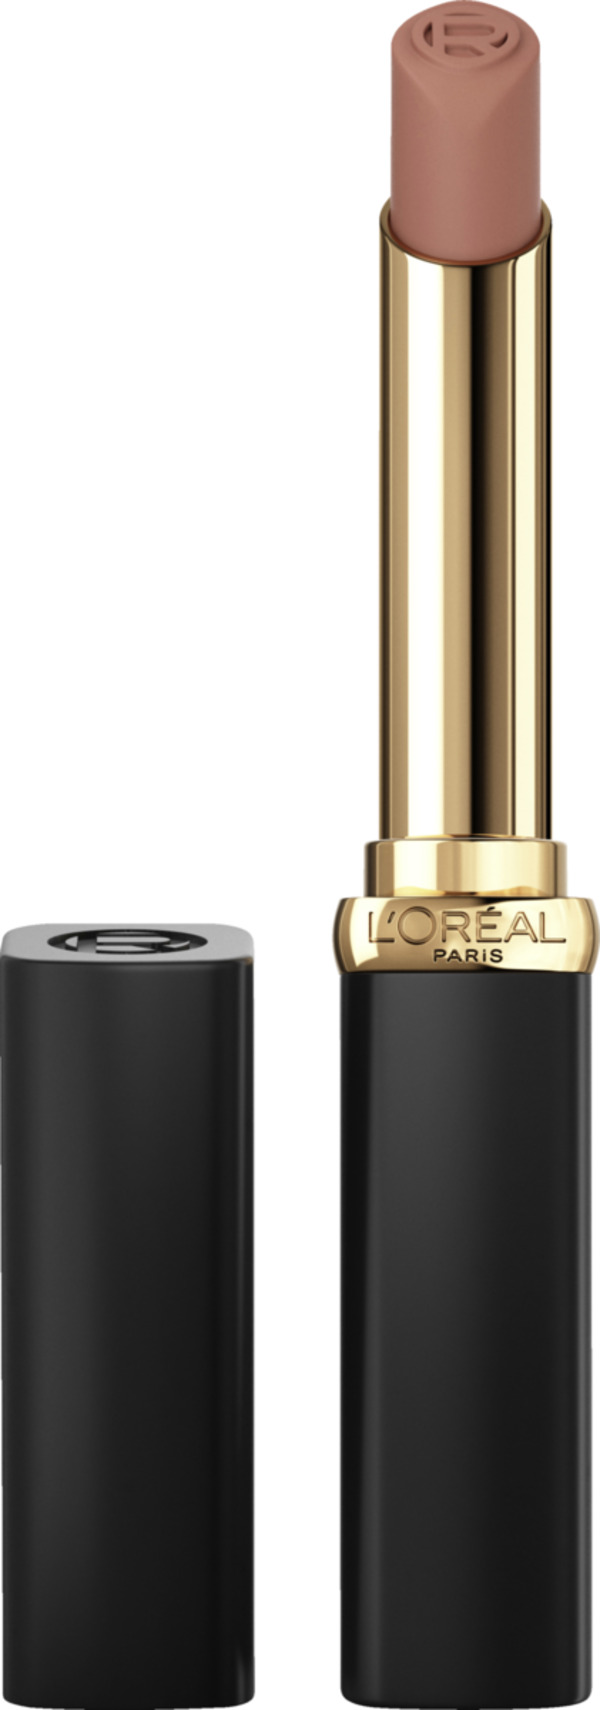 Bild 1 von L’Oréal Paris Color Riche Intense Volume Matte Nude 520 Le Nude Defying